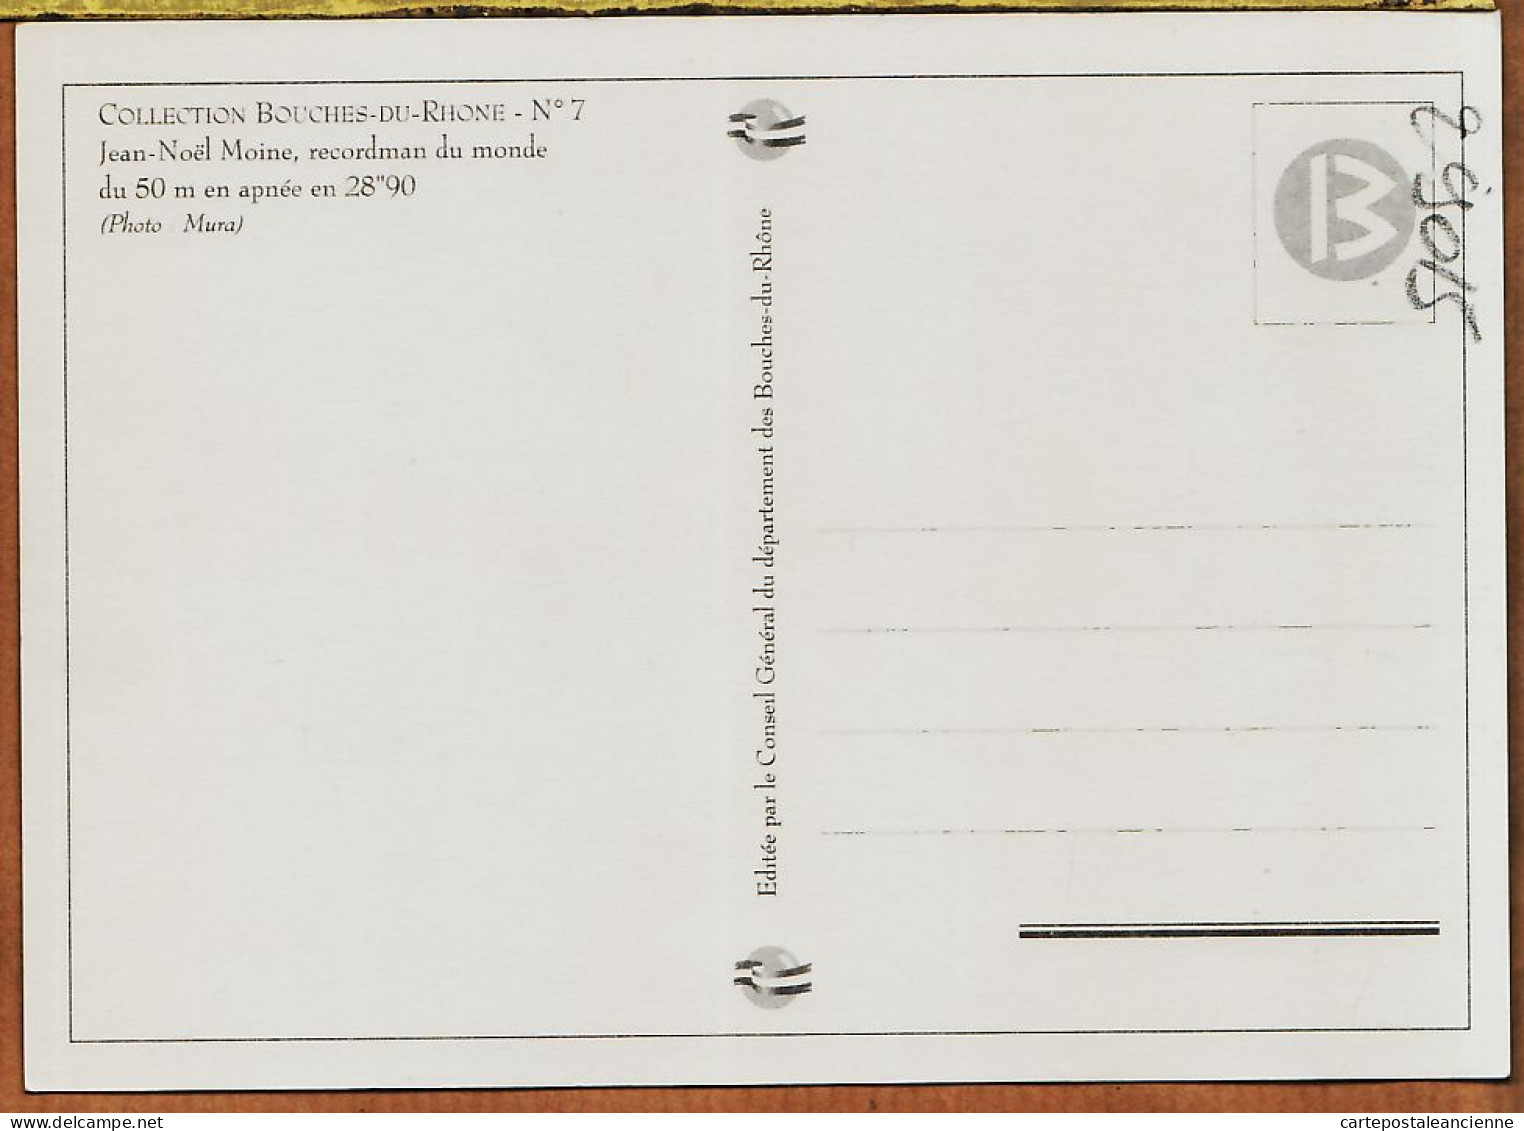 04811 / MARSEILLE Jean-Noël MOINE Recordman Du Monde 50 M Apnée 28"90 Photo MURA Collection BOUCHES Du RHONE N°7 - Nuoto